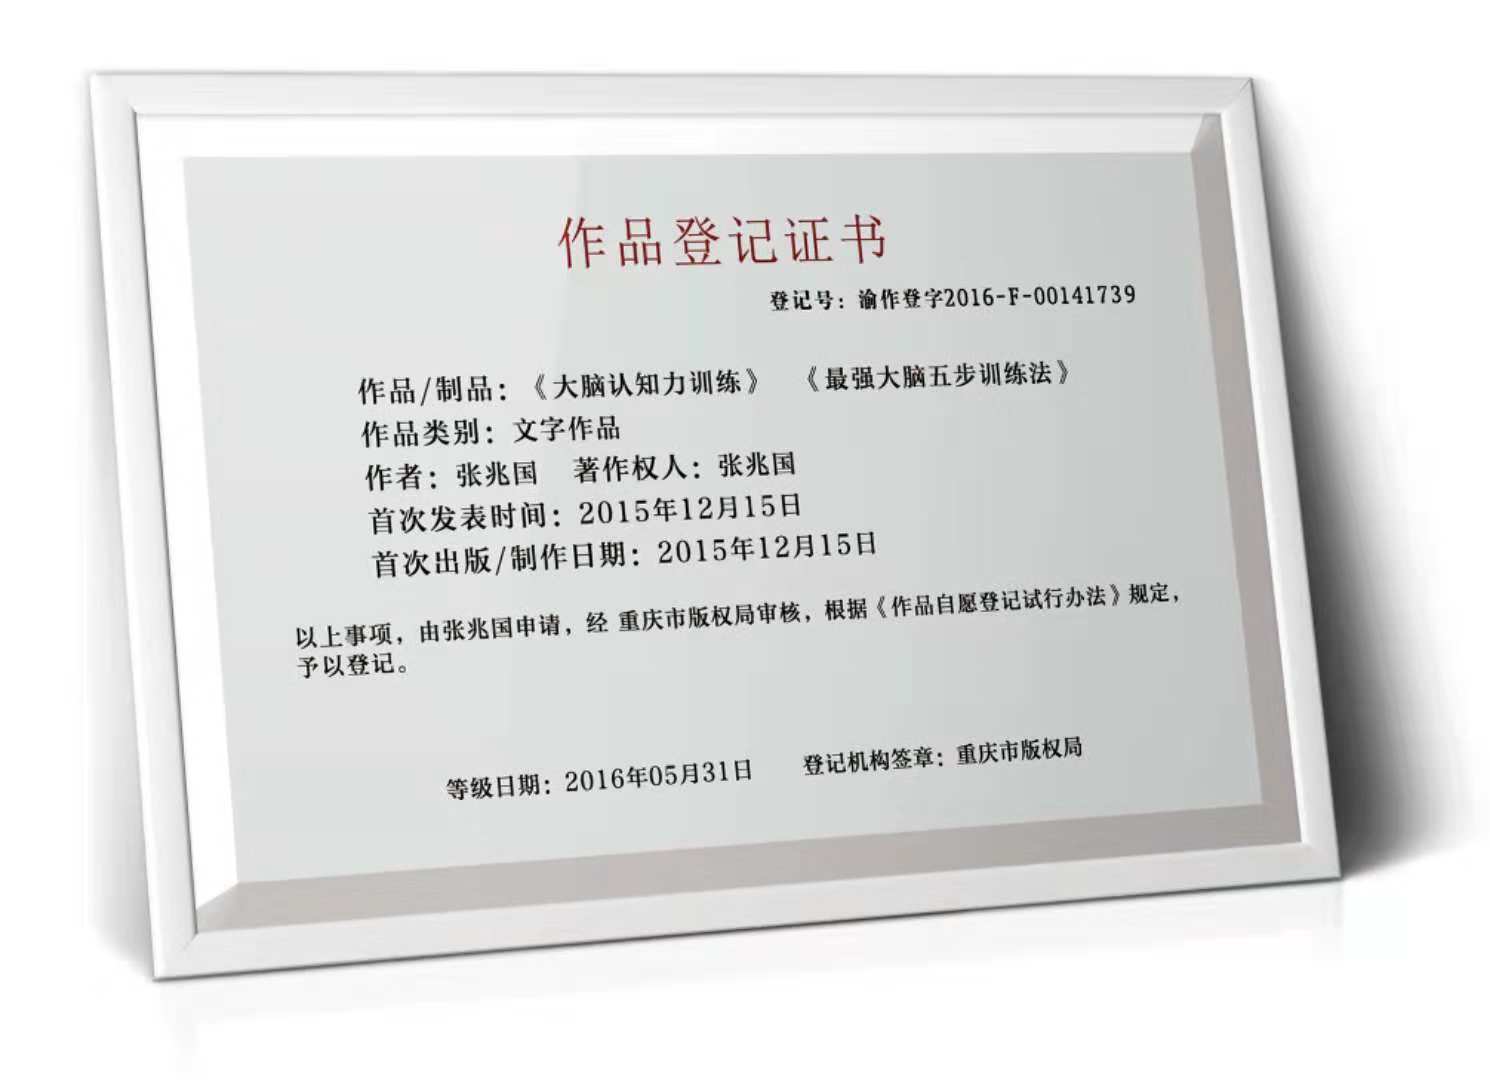 我要加盟北京国翰育教教育科技有限公司，需要多少钱啊？